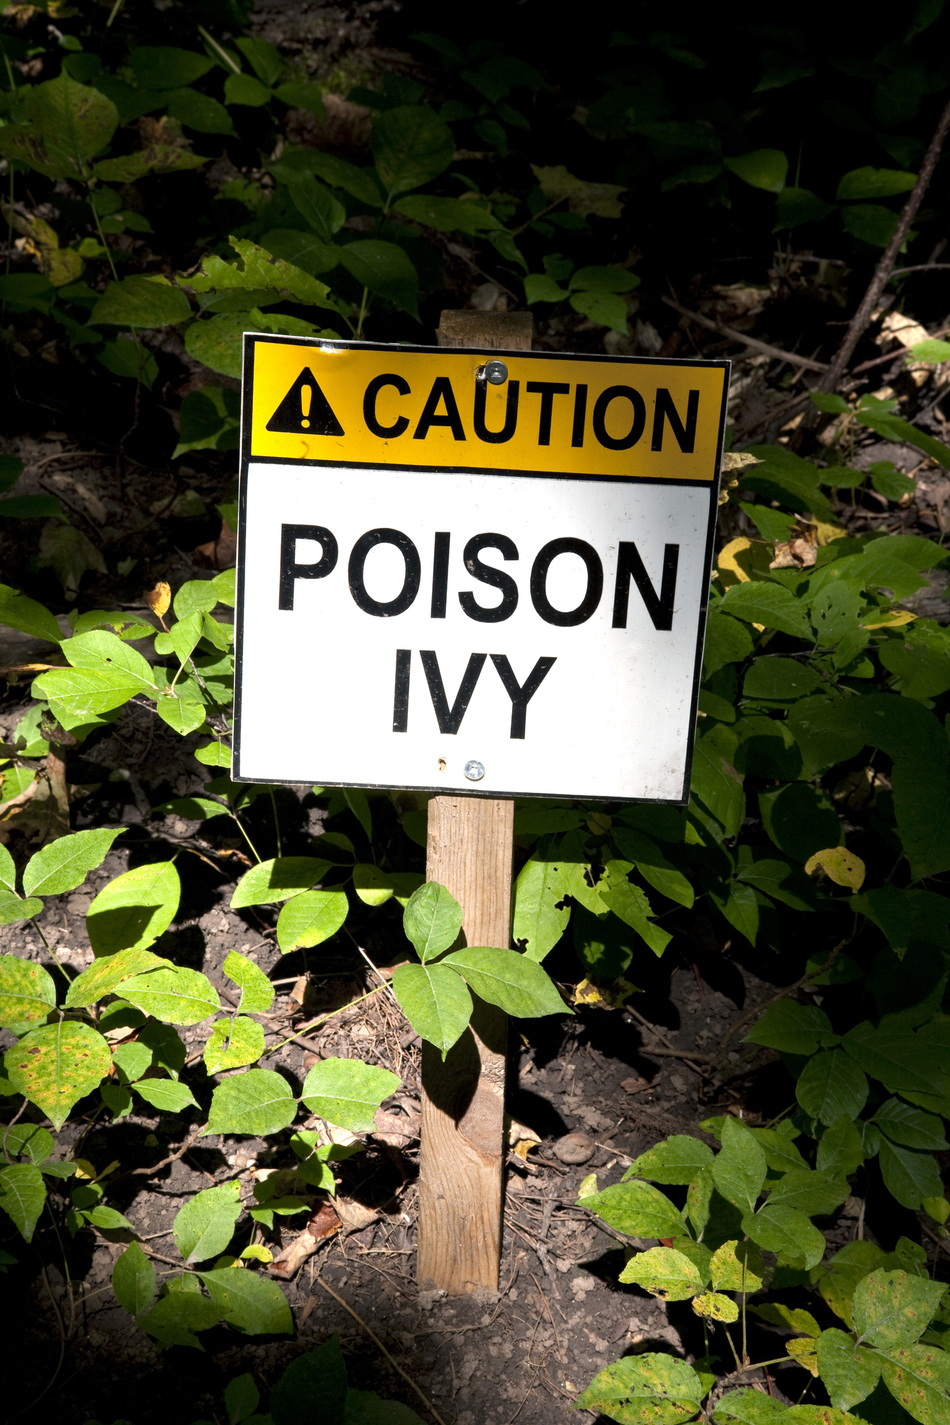 How Do I Treat Poison Ivy?